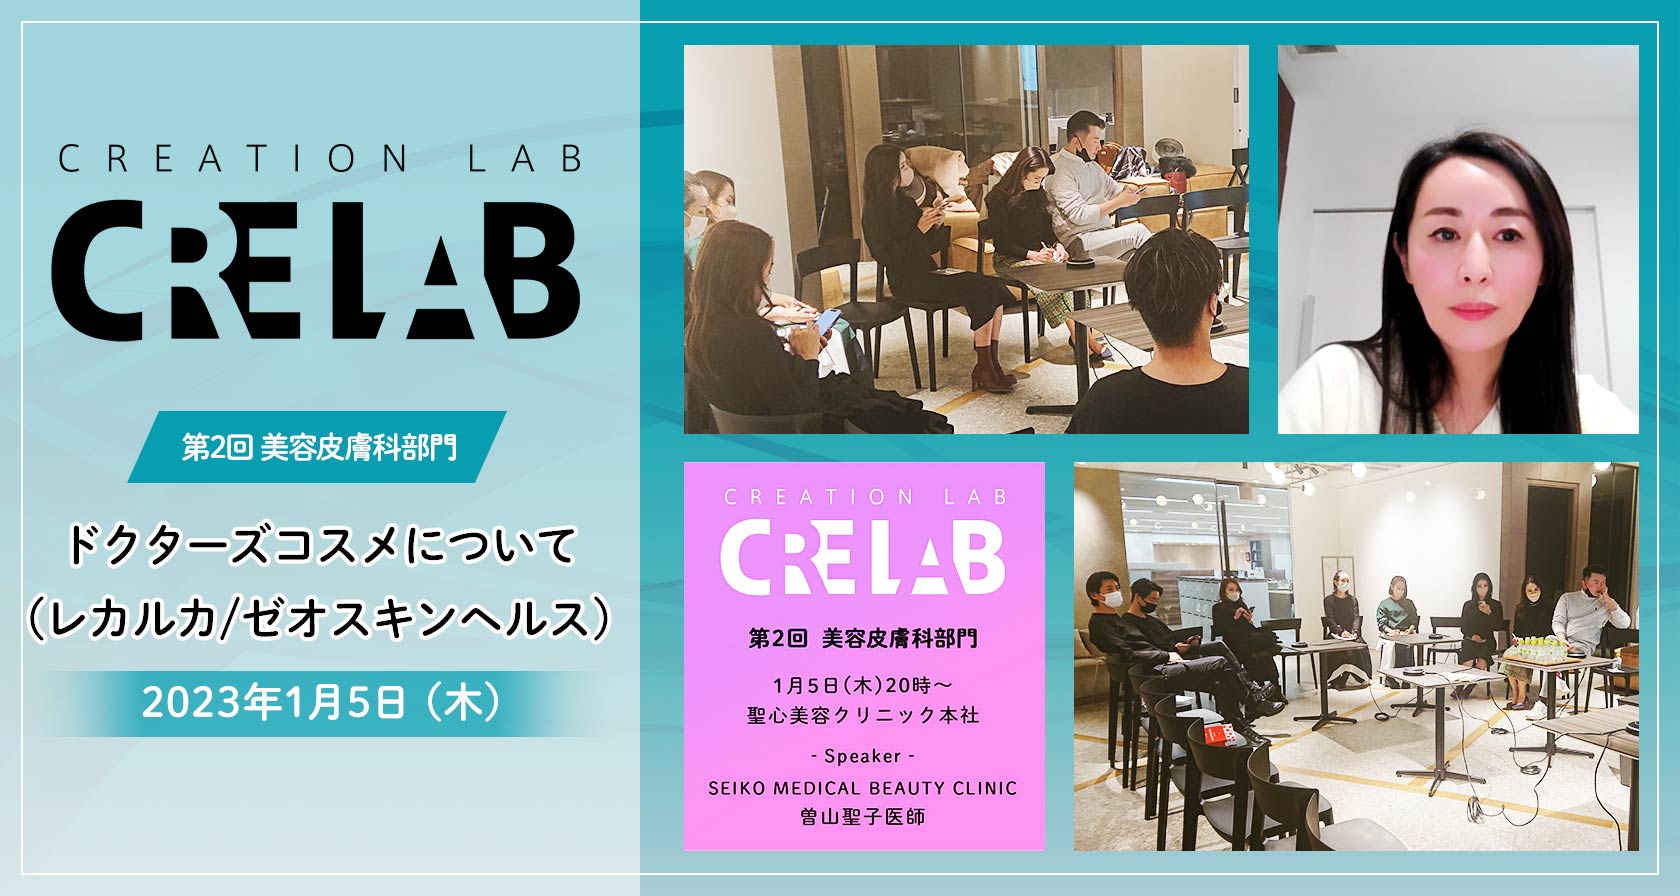 Creation Lab(クリラボ)